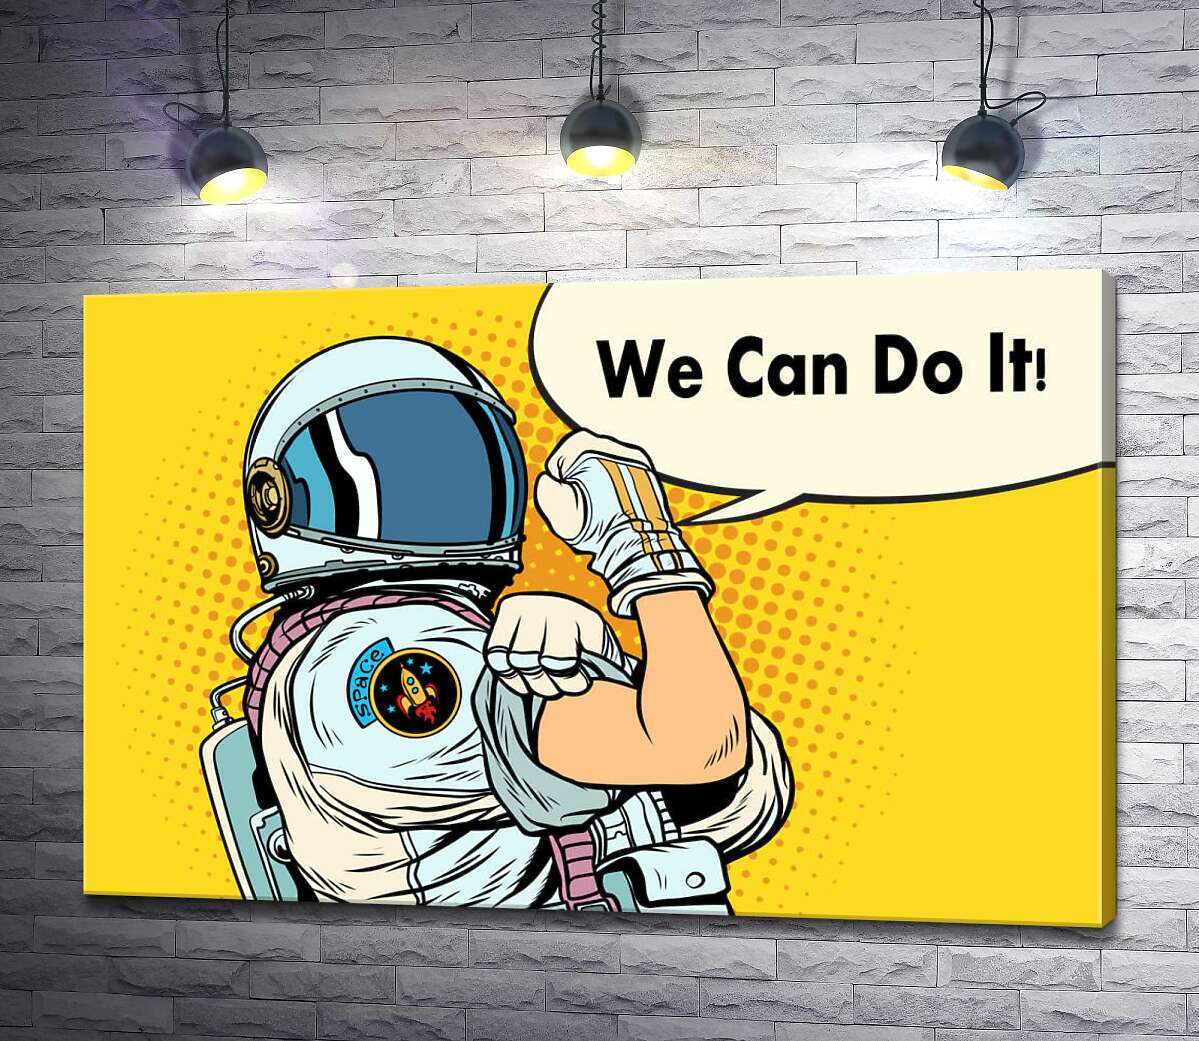 картина Отважная космонавтка с фразой "We Can Do It!"